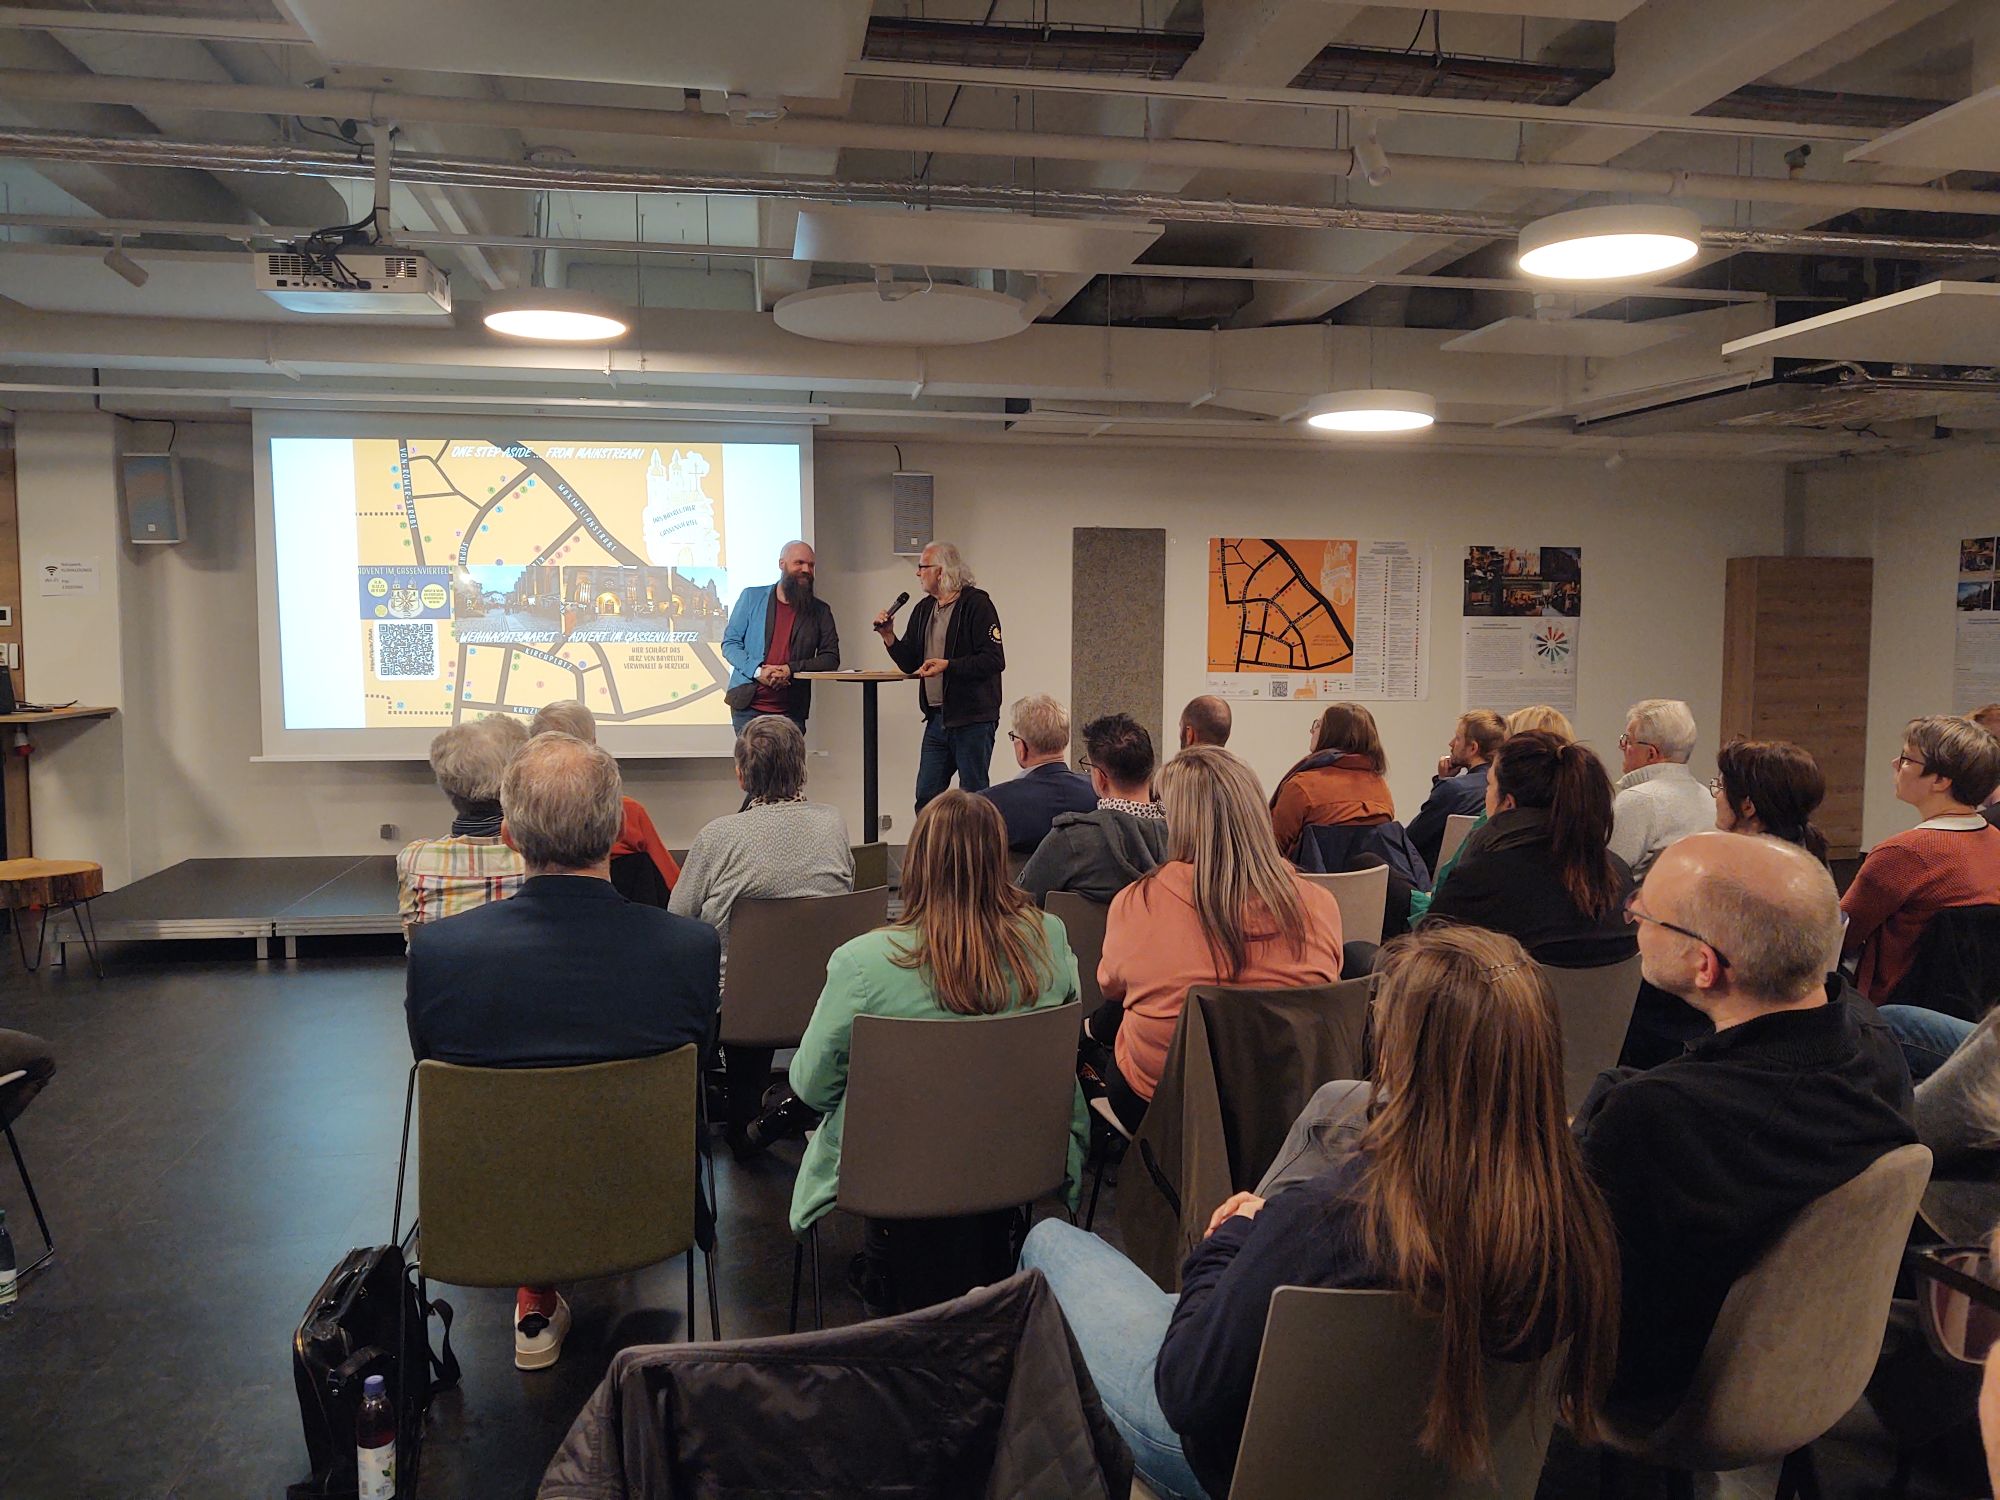 Präsentation von Projektideen durch Akteur während einer Veranstaltung zur Zukunft der Innenstadt